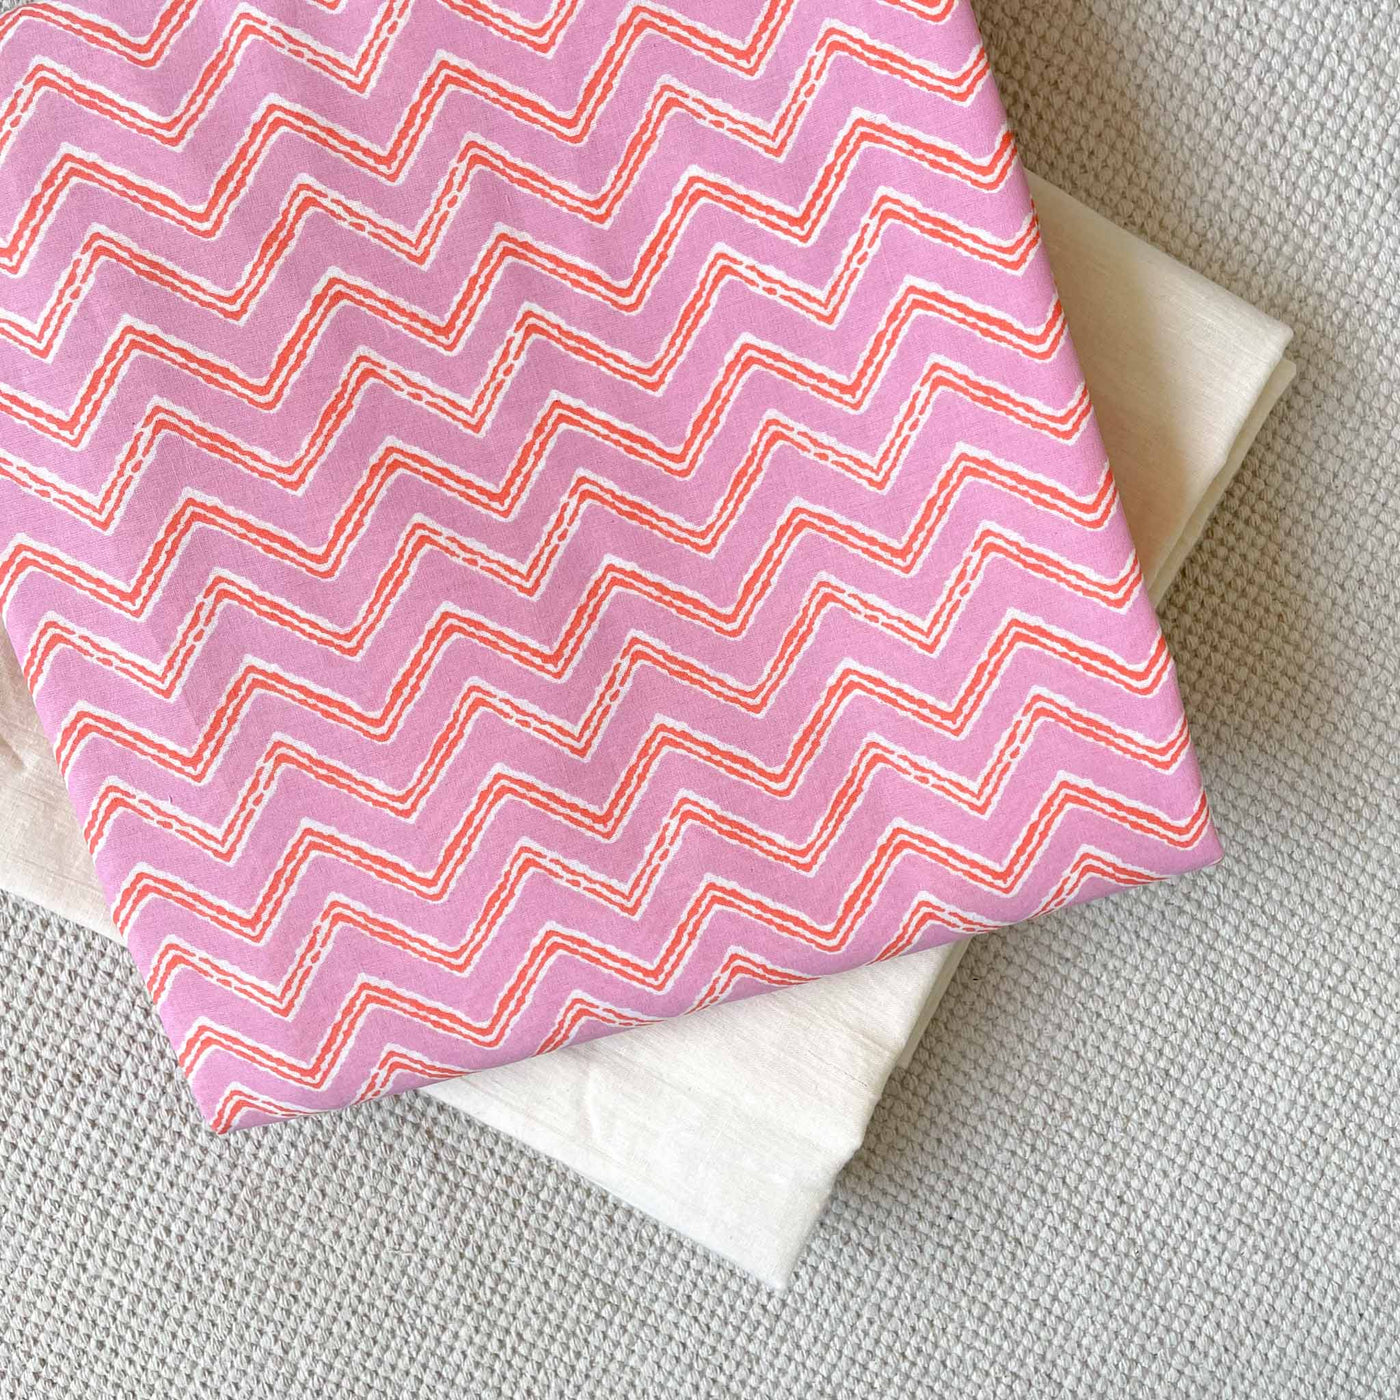 Fabric Pandit Kurta Set Unisex Light Pink And Orange Zig-Zag Pattern | Hand Block Printed Pure Cotton Kurta Fabric (2.5 Meters) | and Cotton Pyjama (2.5 Meters) | Unstitched Combo Set